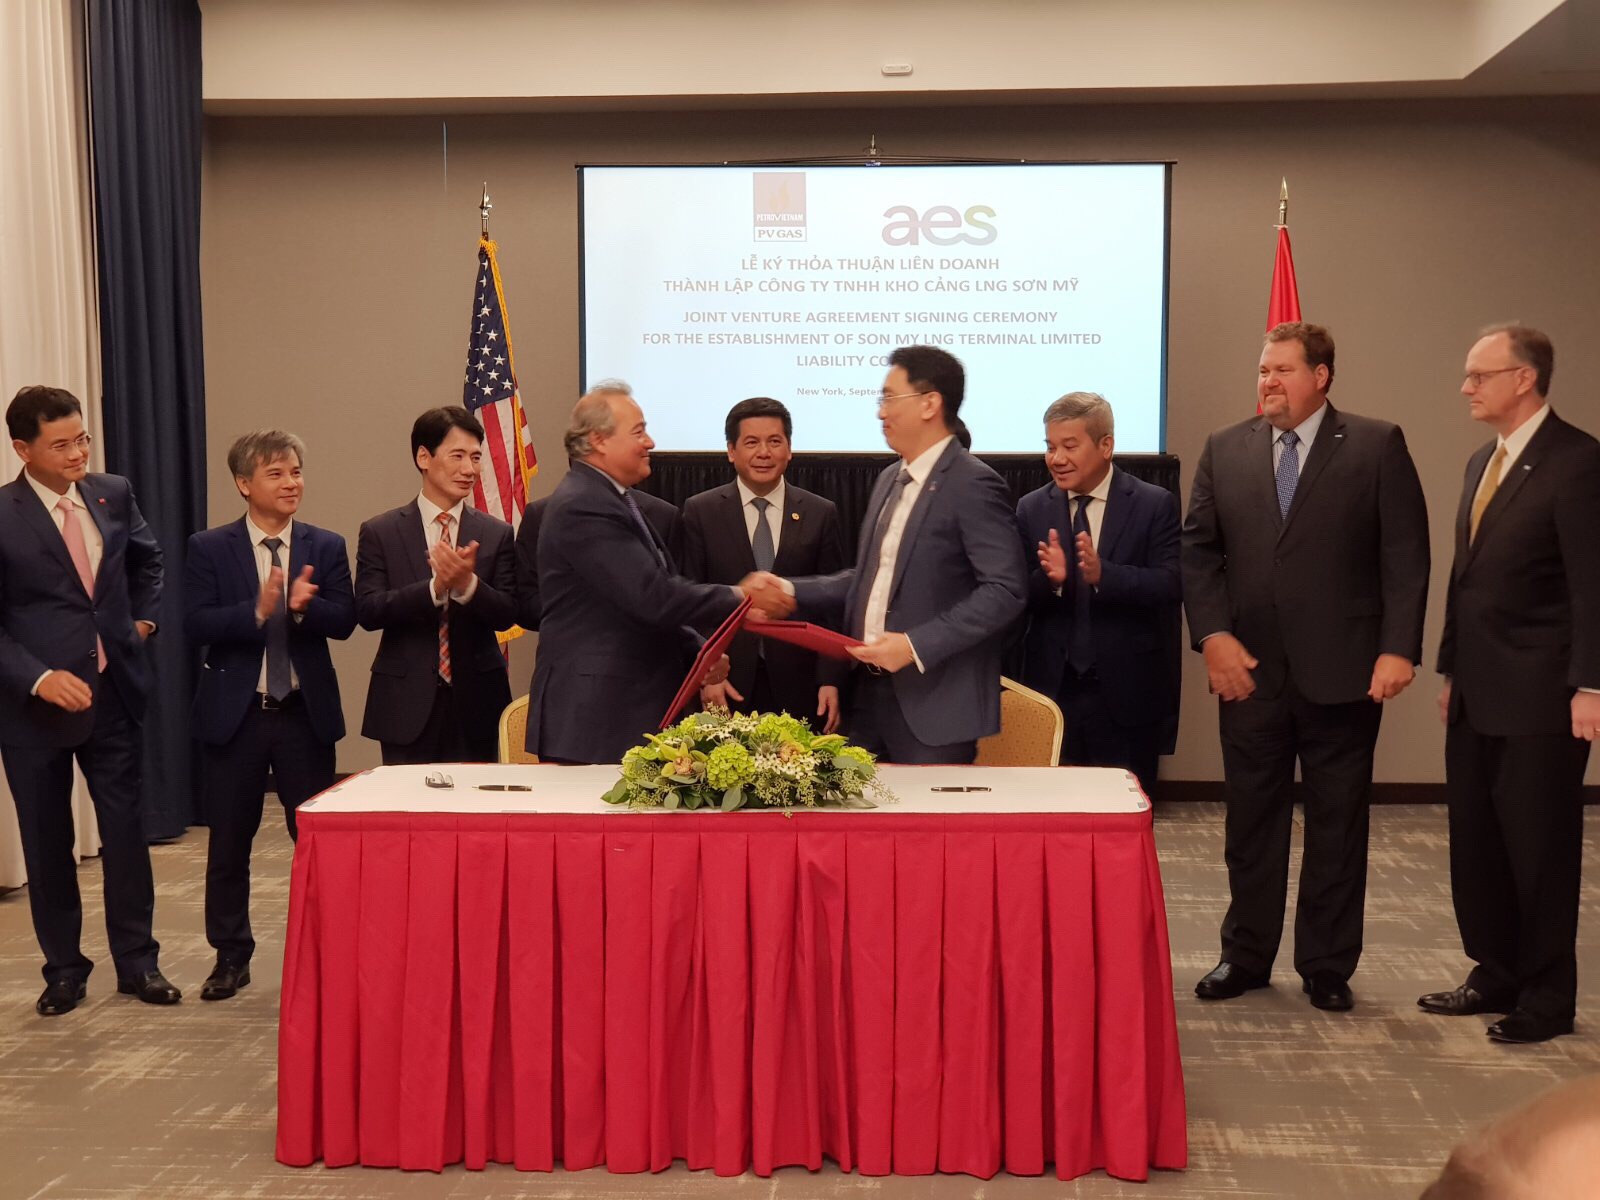 Bộ trưởng Công Thương Nguyễn Hồng Diên chứng kiến lễ ký thỏa thuận liên doanh dự án kho cảng LNG Sơn Mỹ - Ảnh 2.